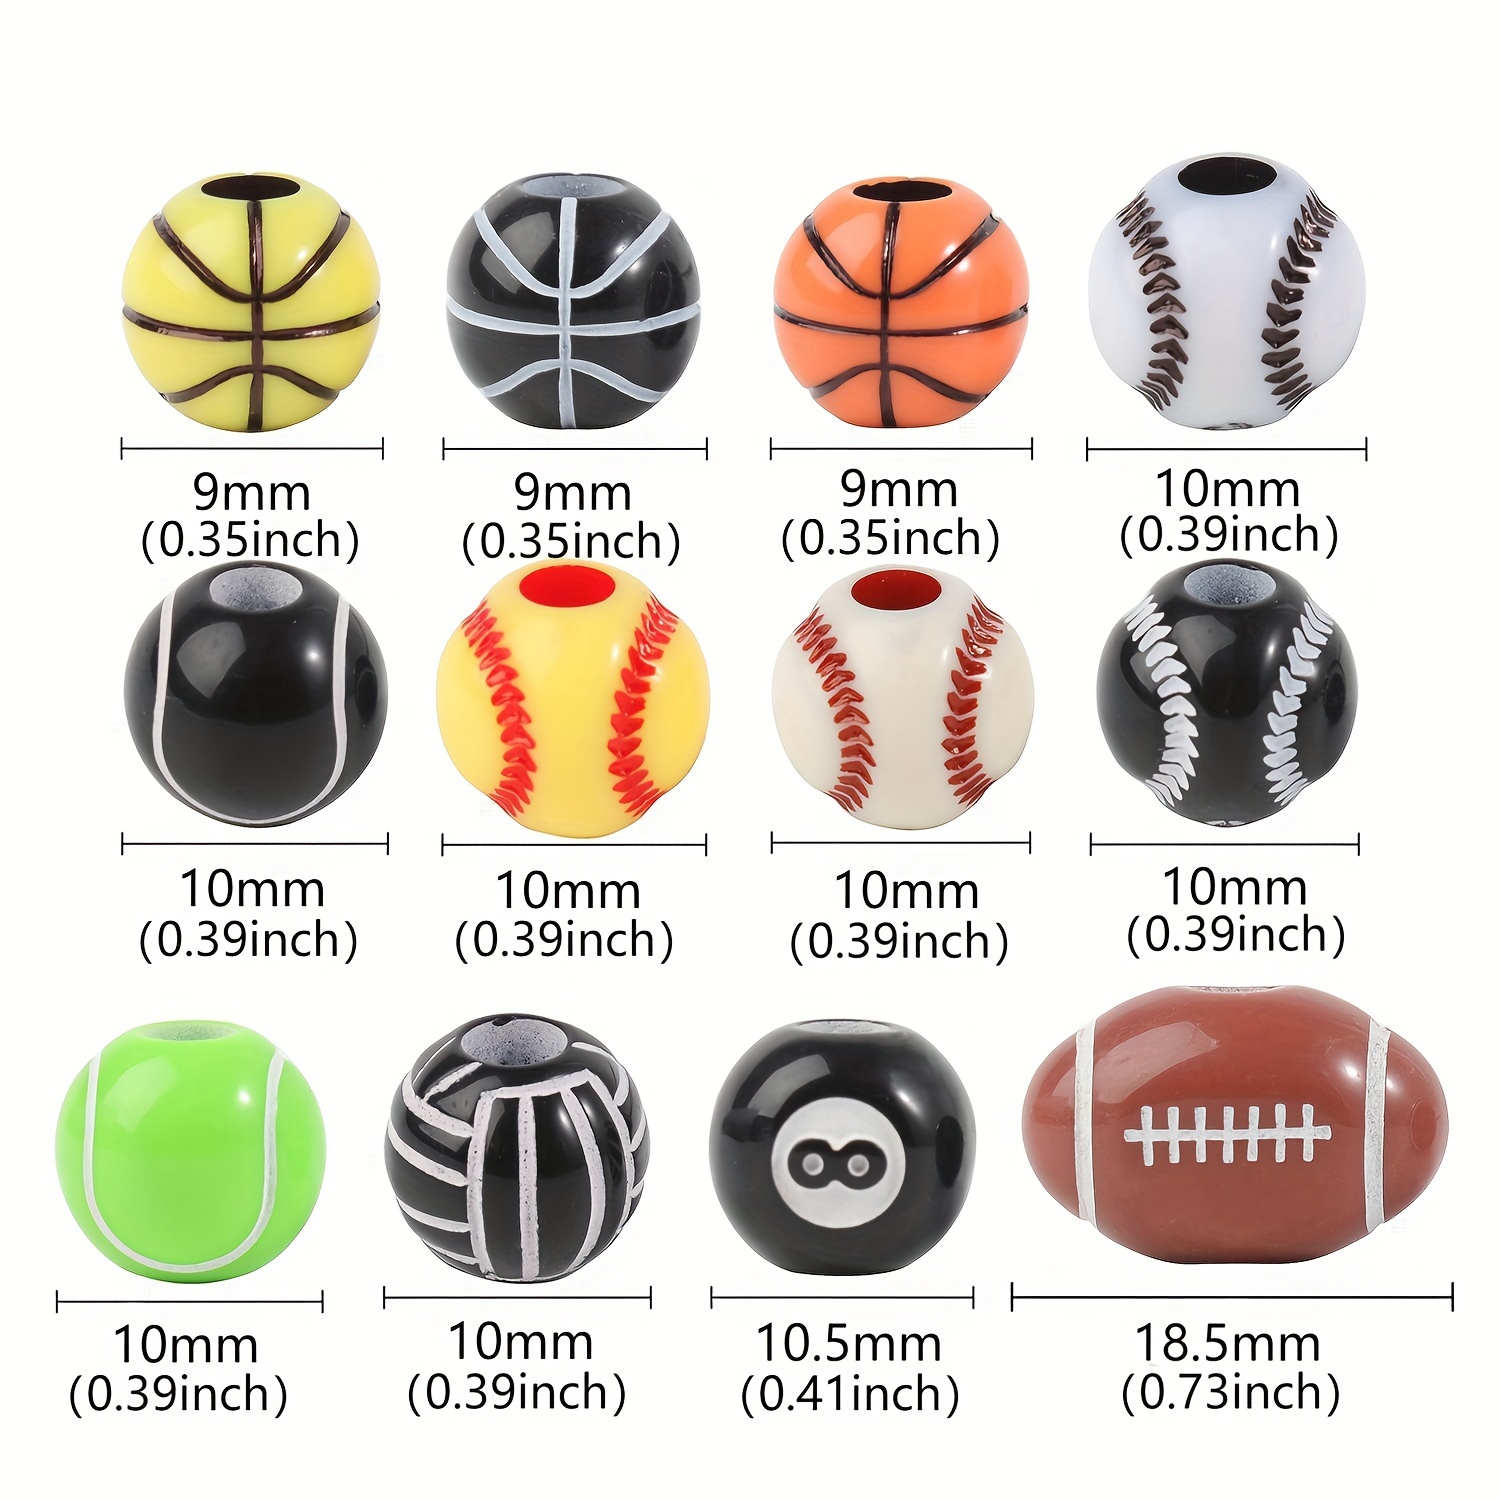  CCOZN 200 cuentas de bolas deportivas para hacer joyas de  bricolaje, cuentas de acrílico diminutas de béisbol, baloncesto, fútbol,  voleibol, cuentas para pulseras, llaveros, collares, manualidades, : Arte y  Manualidades